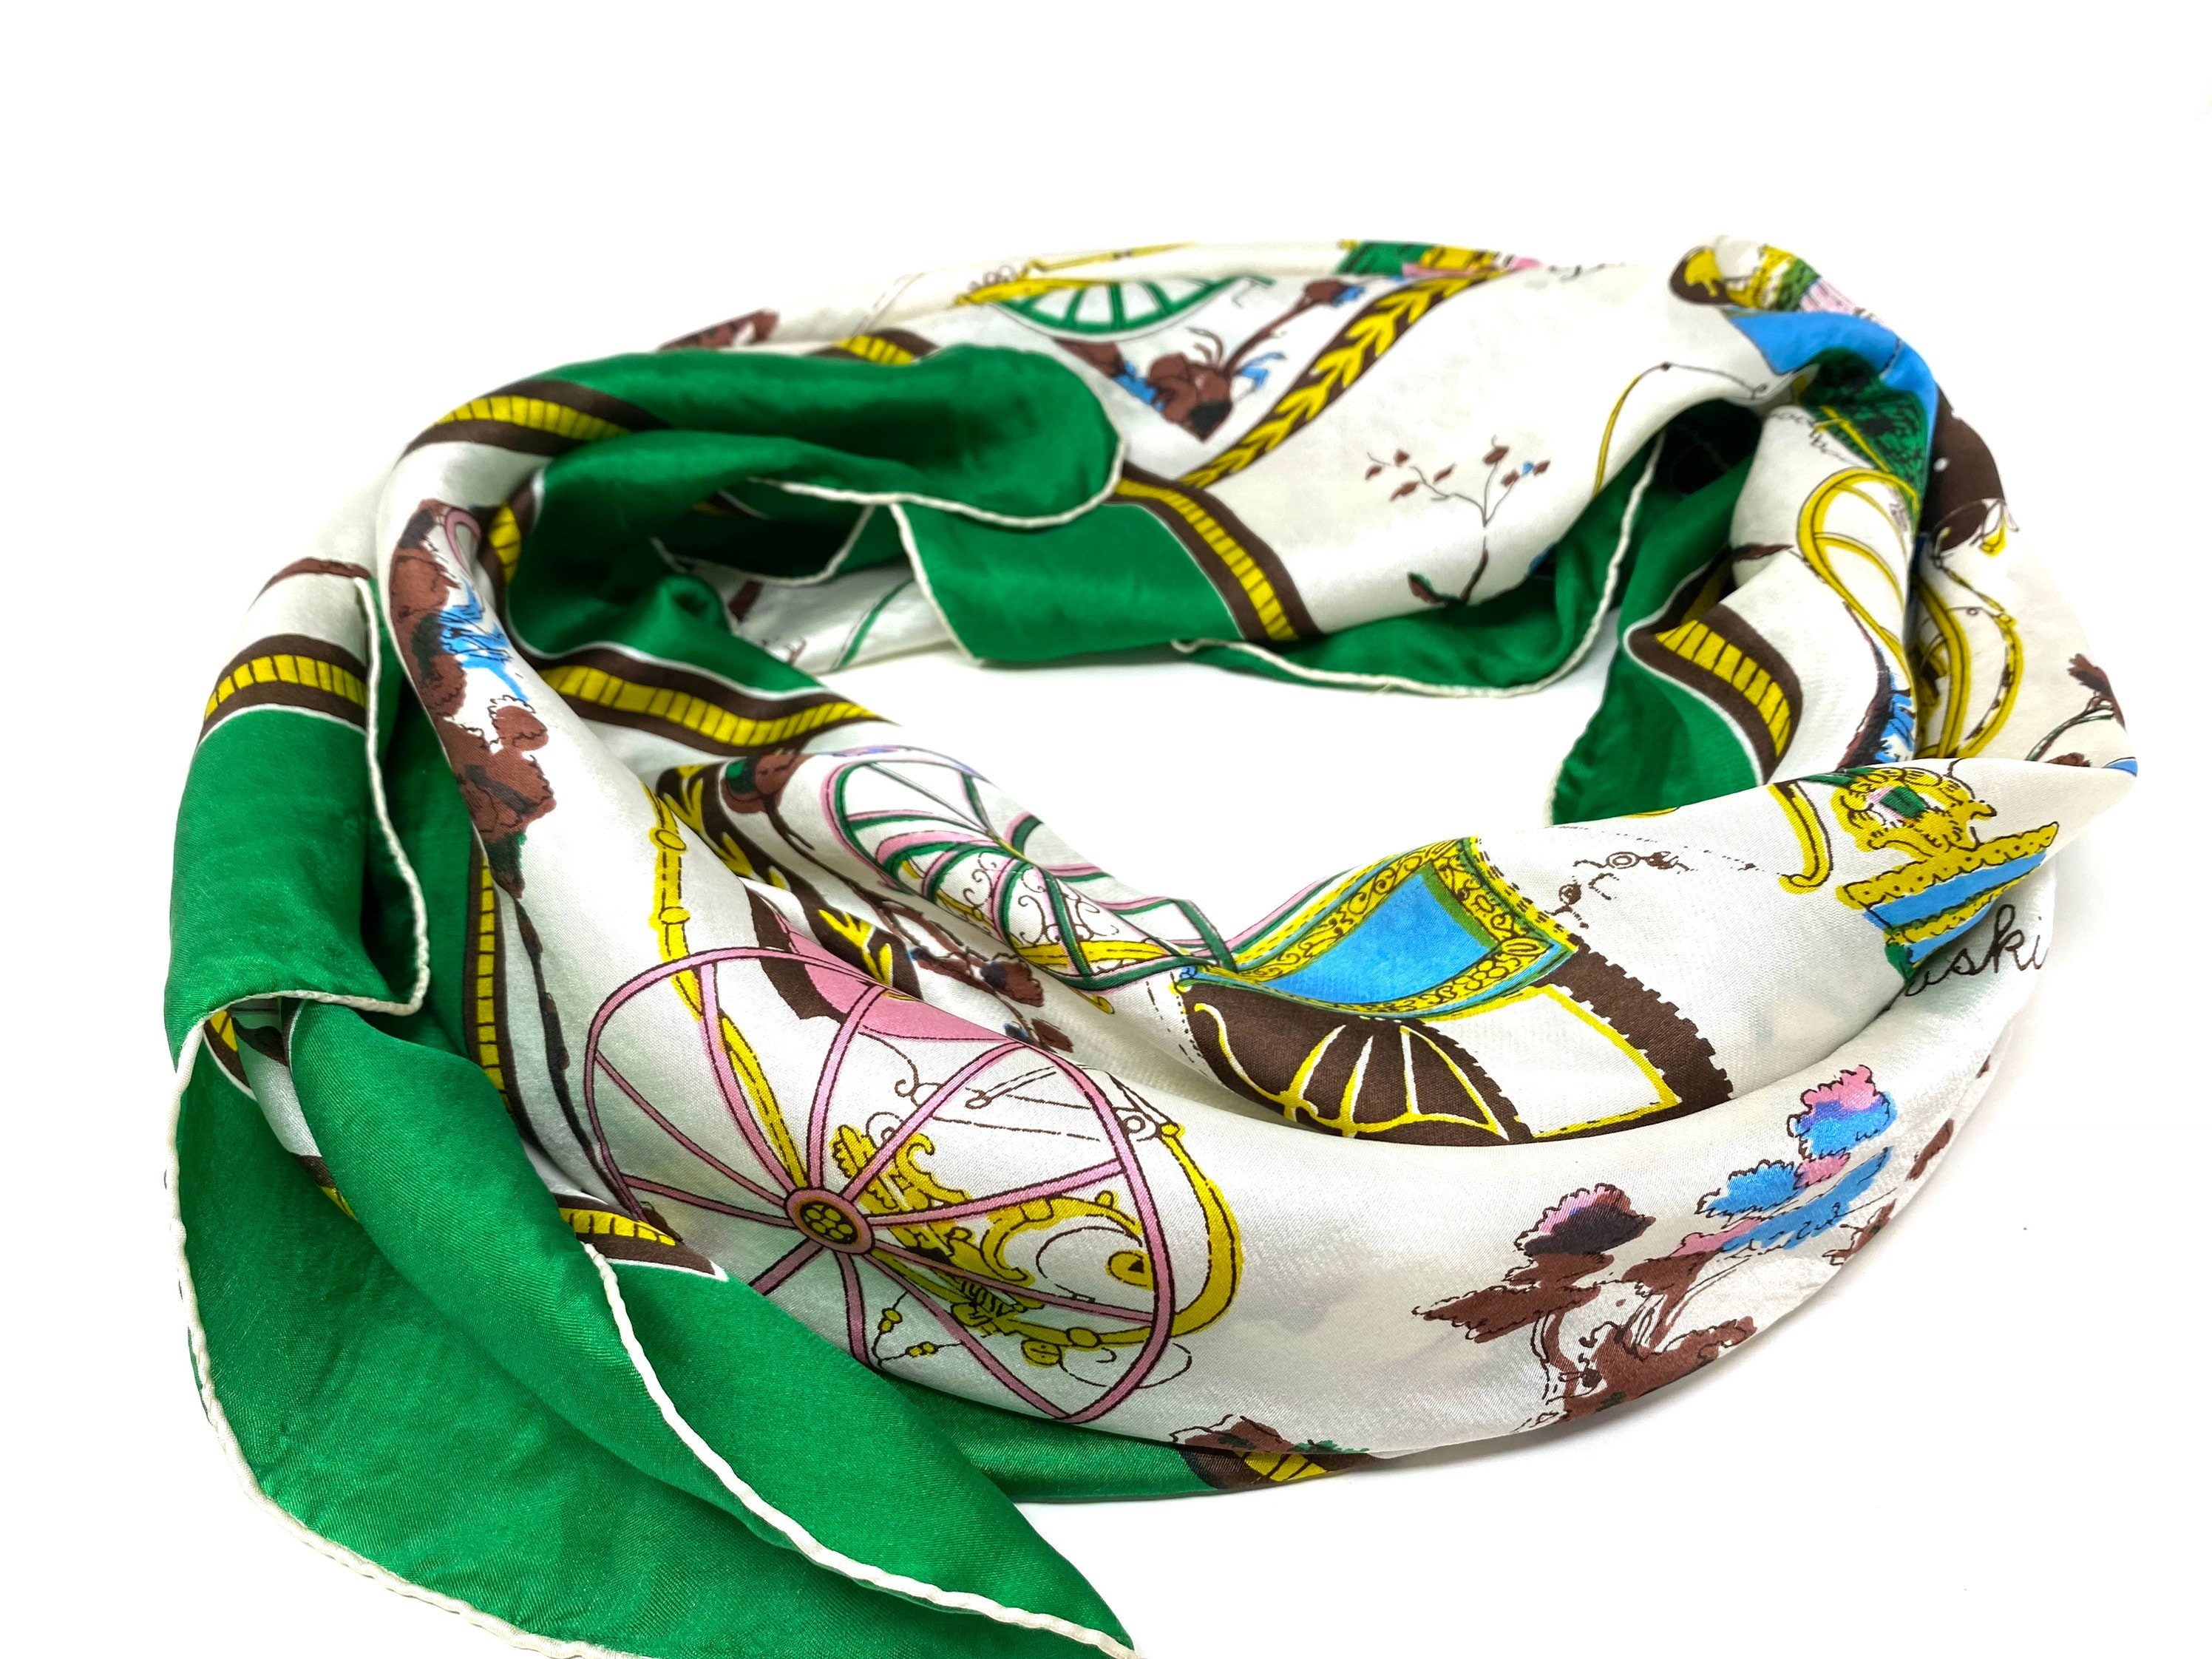 Louis Féraud Paris silk scarf, carousel motif – NVISION